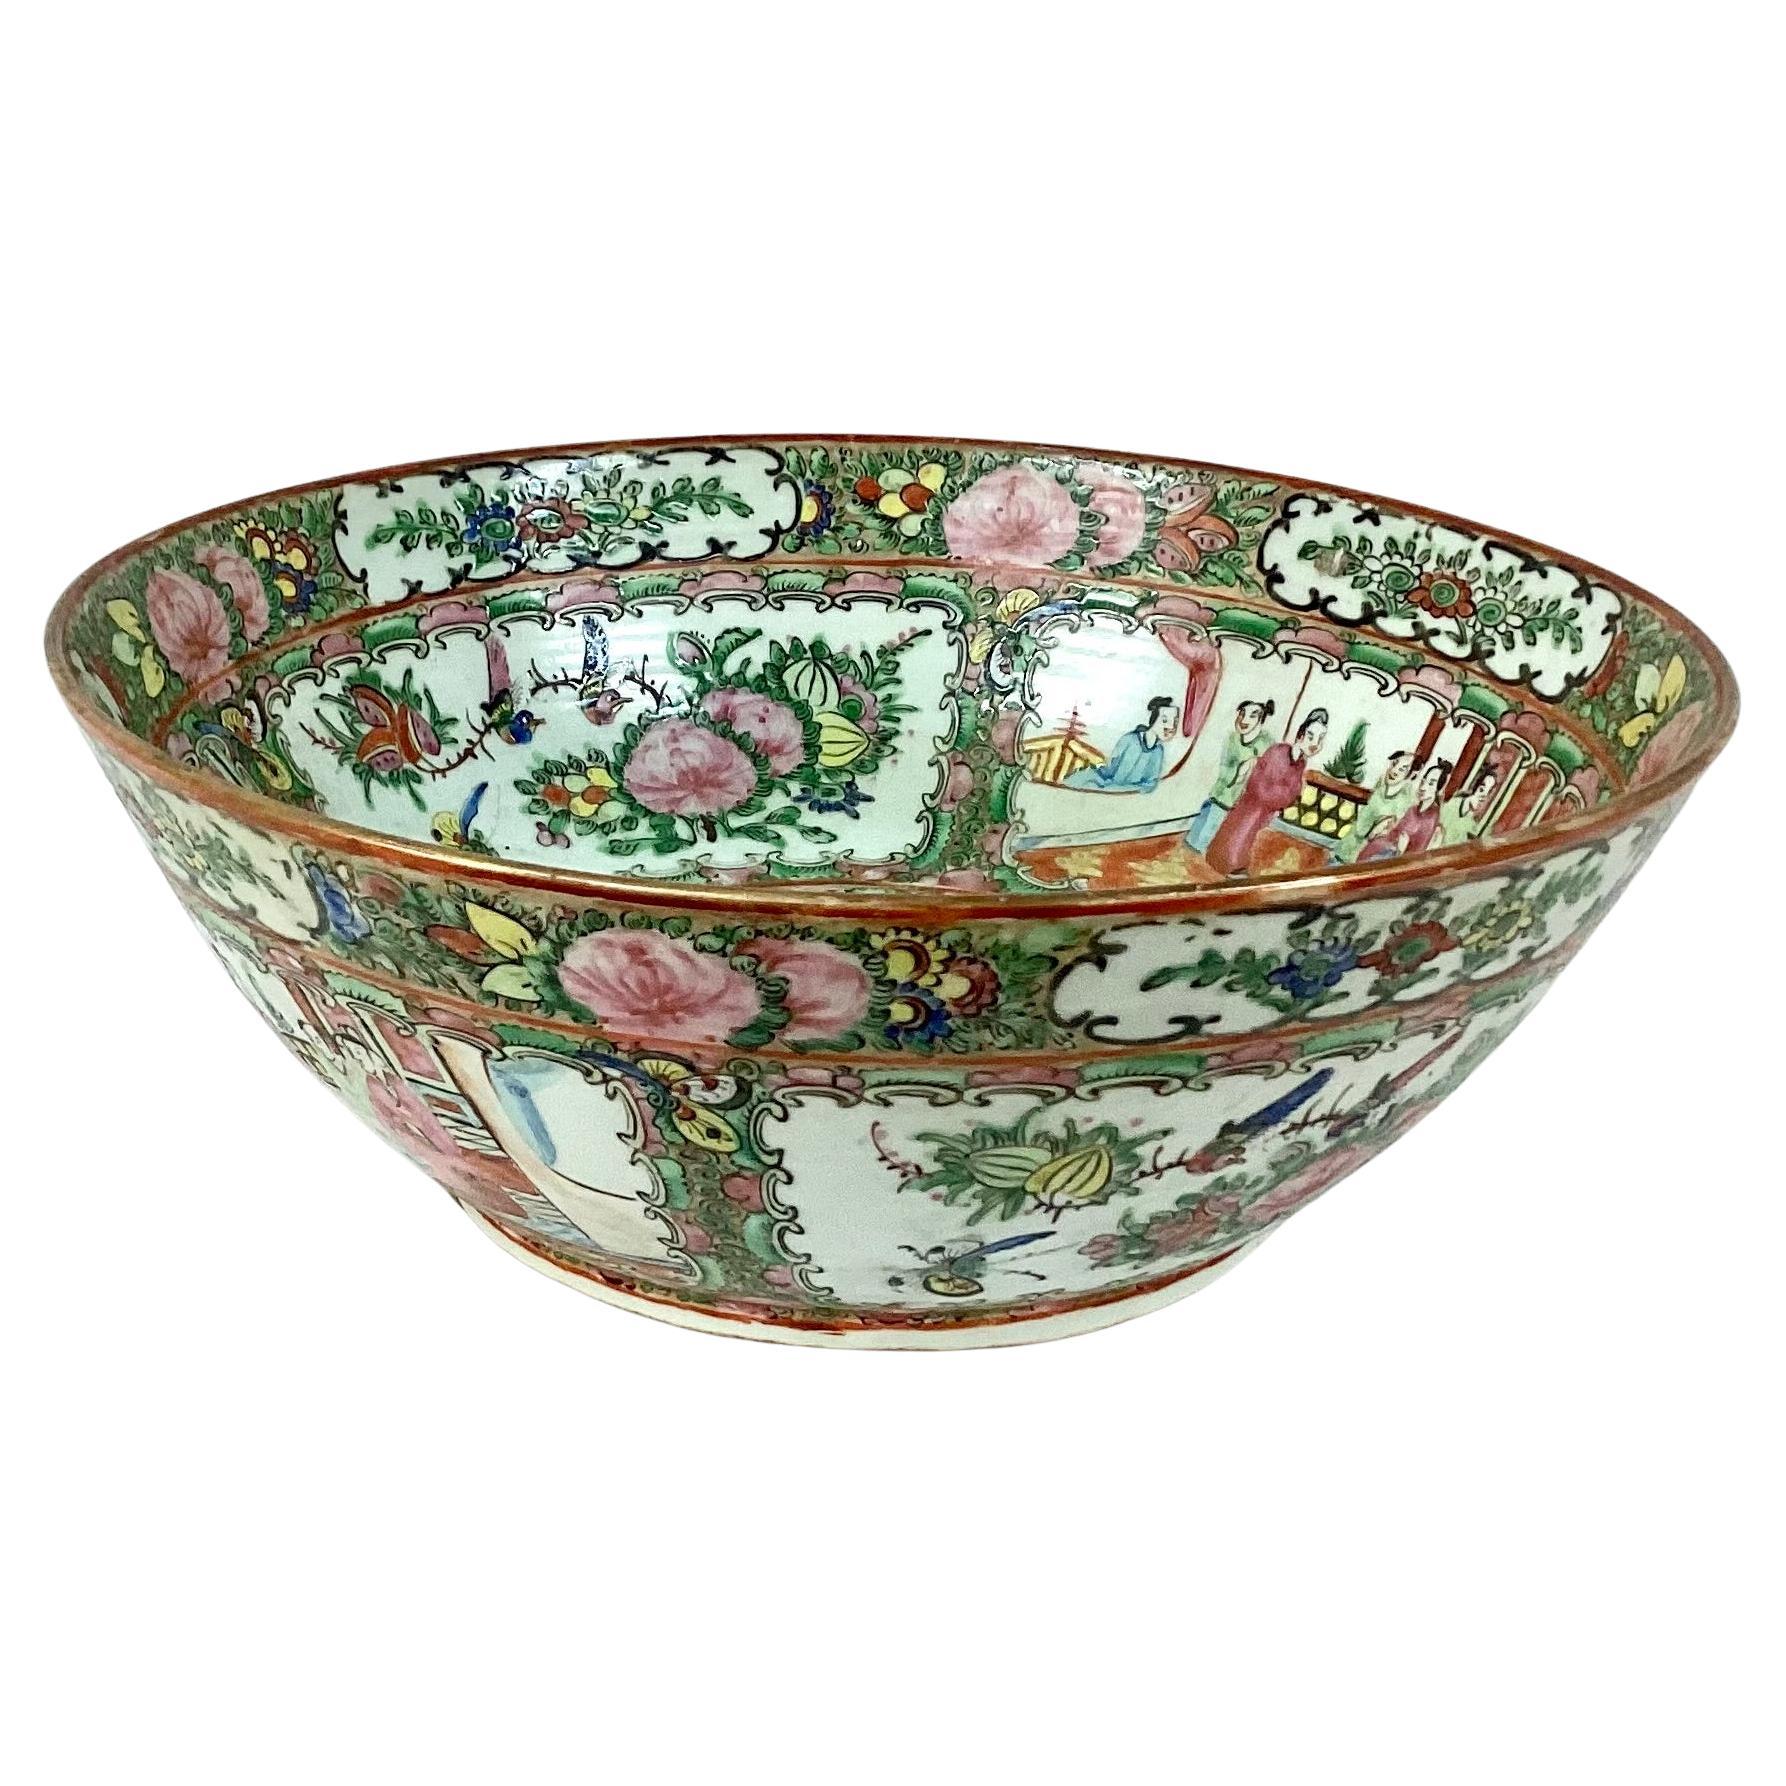 Große farbenfrohe chinesische Exportschüssel aus Porzellan mit Medaillon in Famille Rose. Es zeigt klassische orientalische Szenen mit chinesischen Menschen. Insgesamt ist das Stück in wunderbarem Zustand mit einer schönen lebendigen